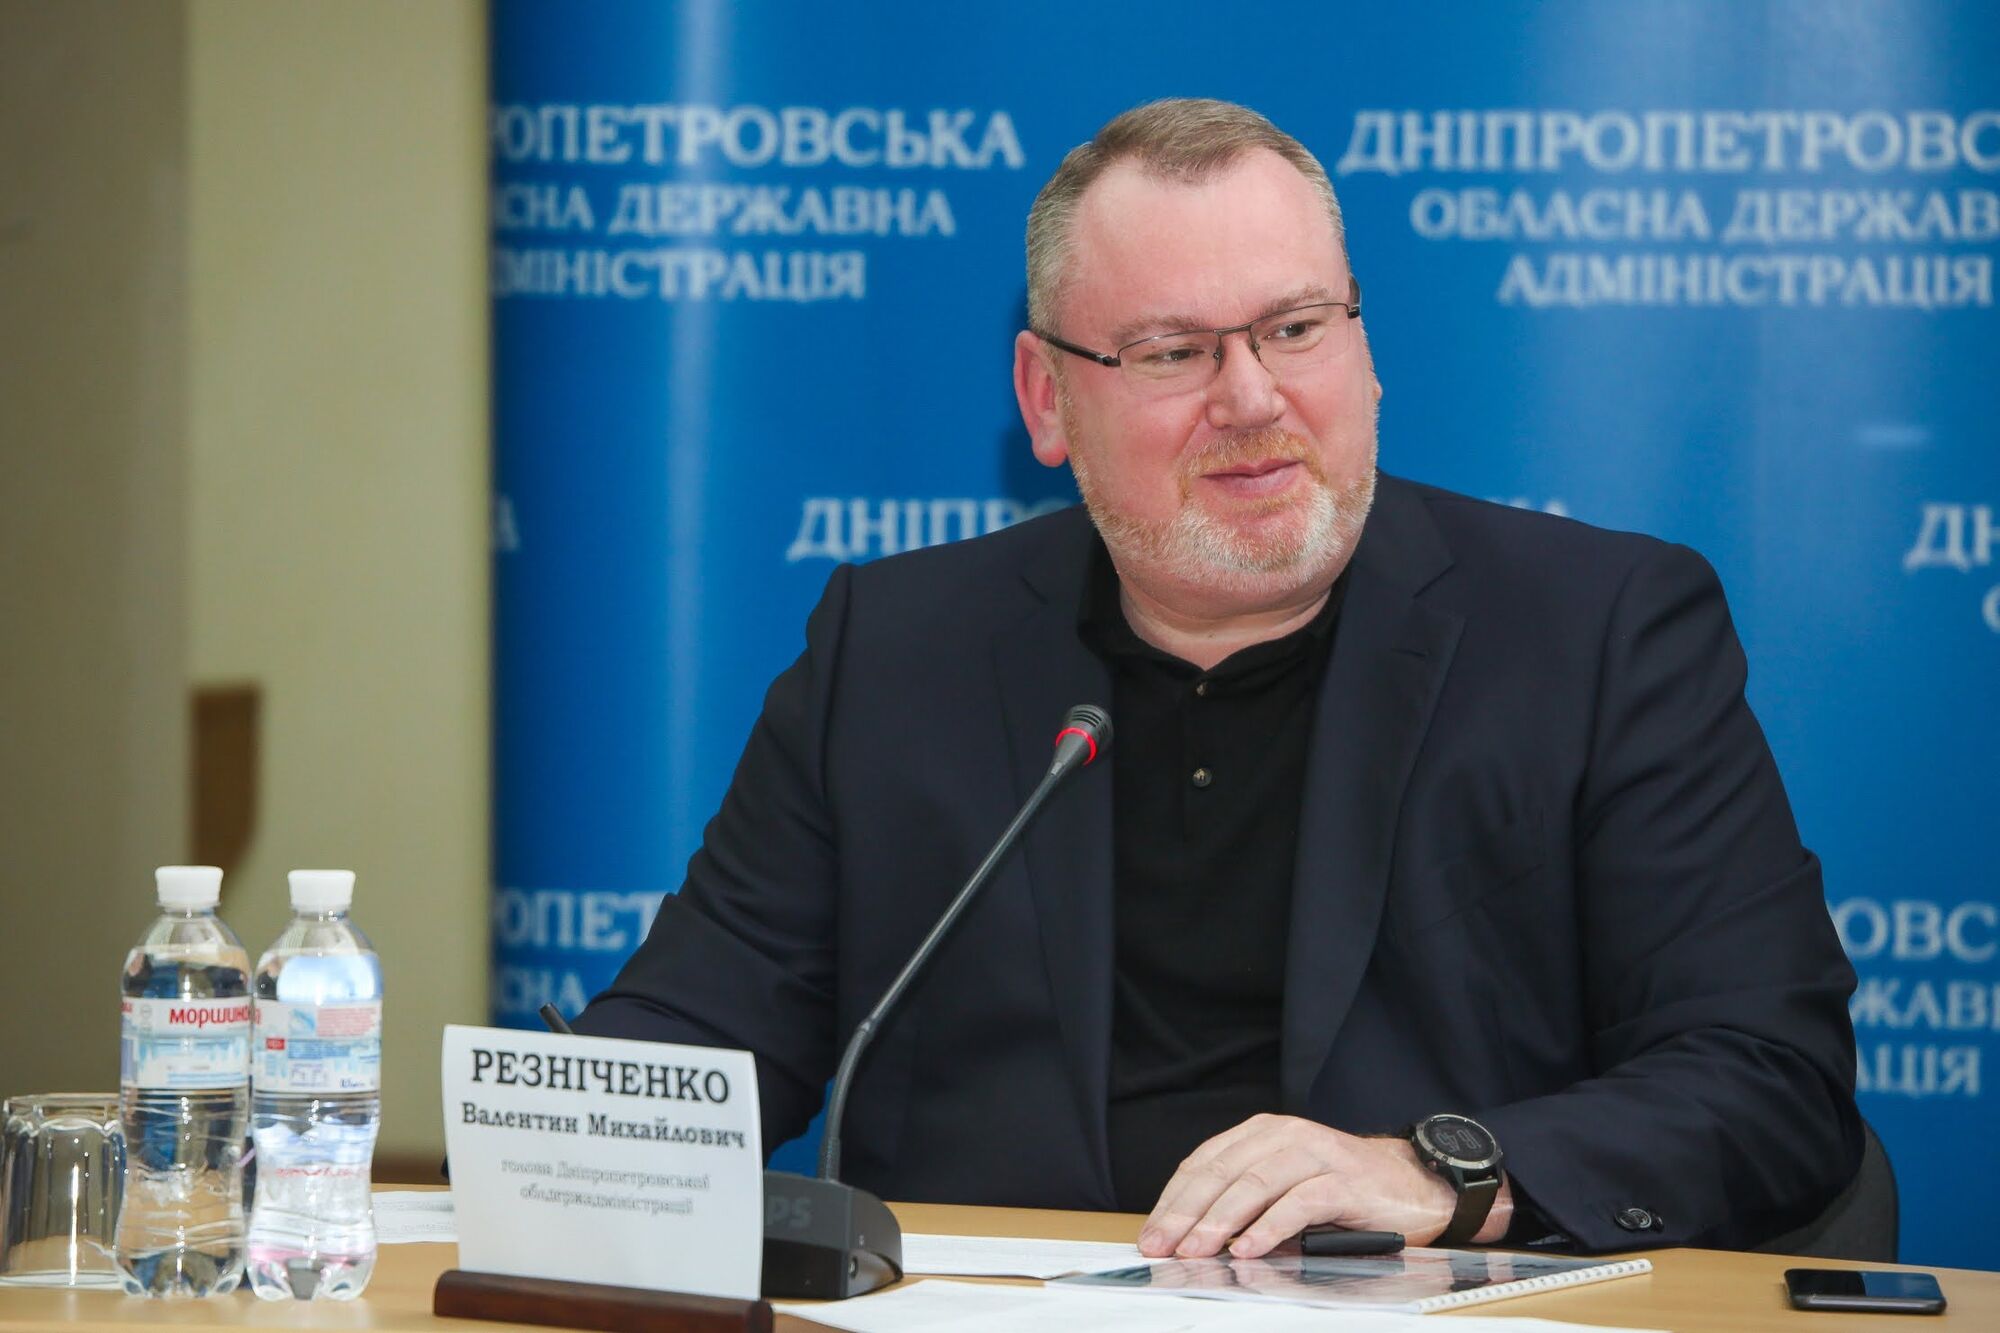 Резніченко: за сприяння Дніпропетровської ОДА перша в області міні-гідроелектростанція здана в експлуатацію